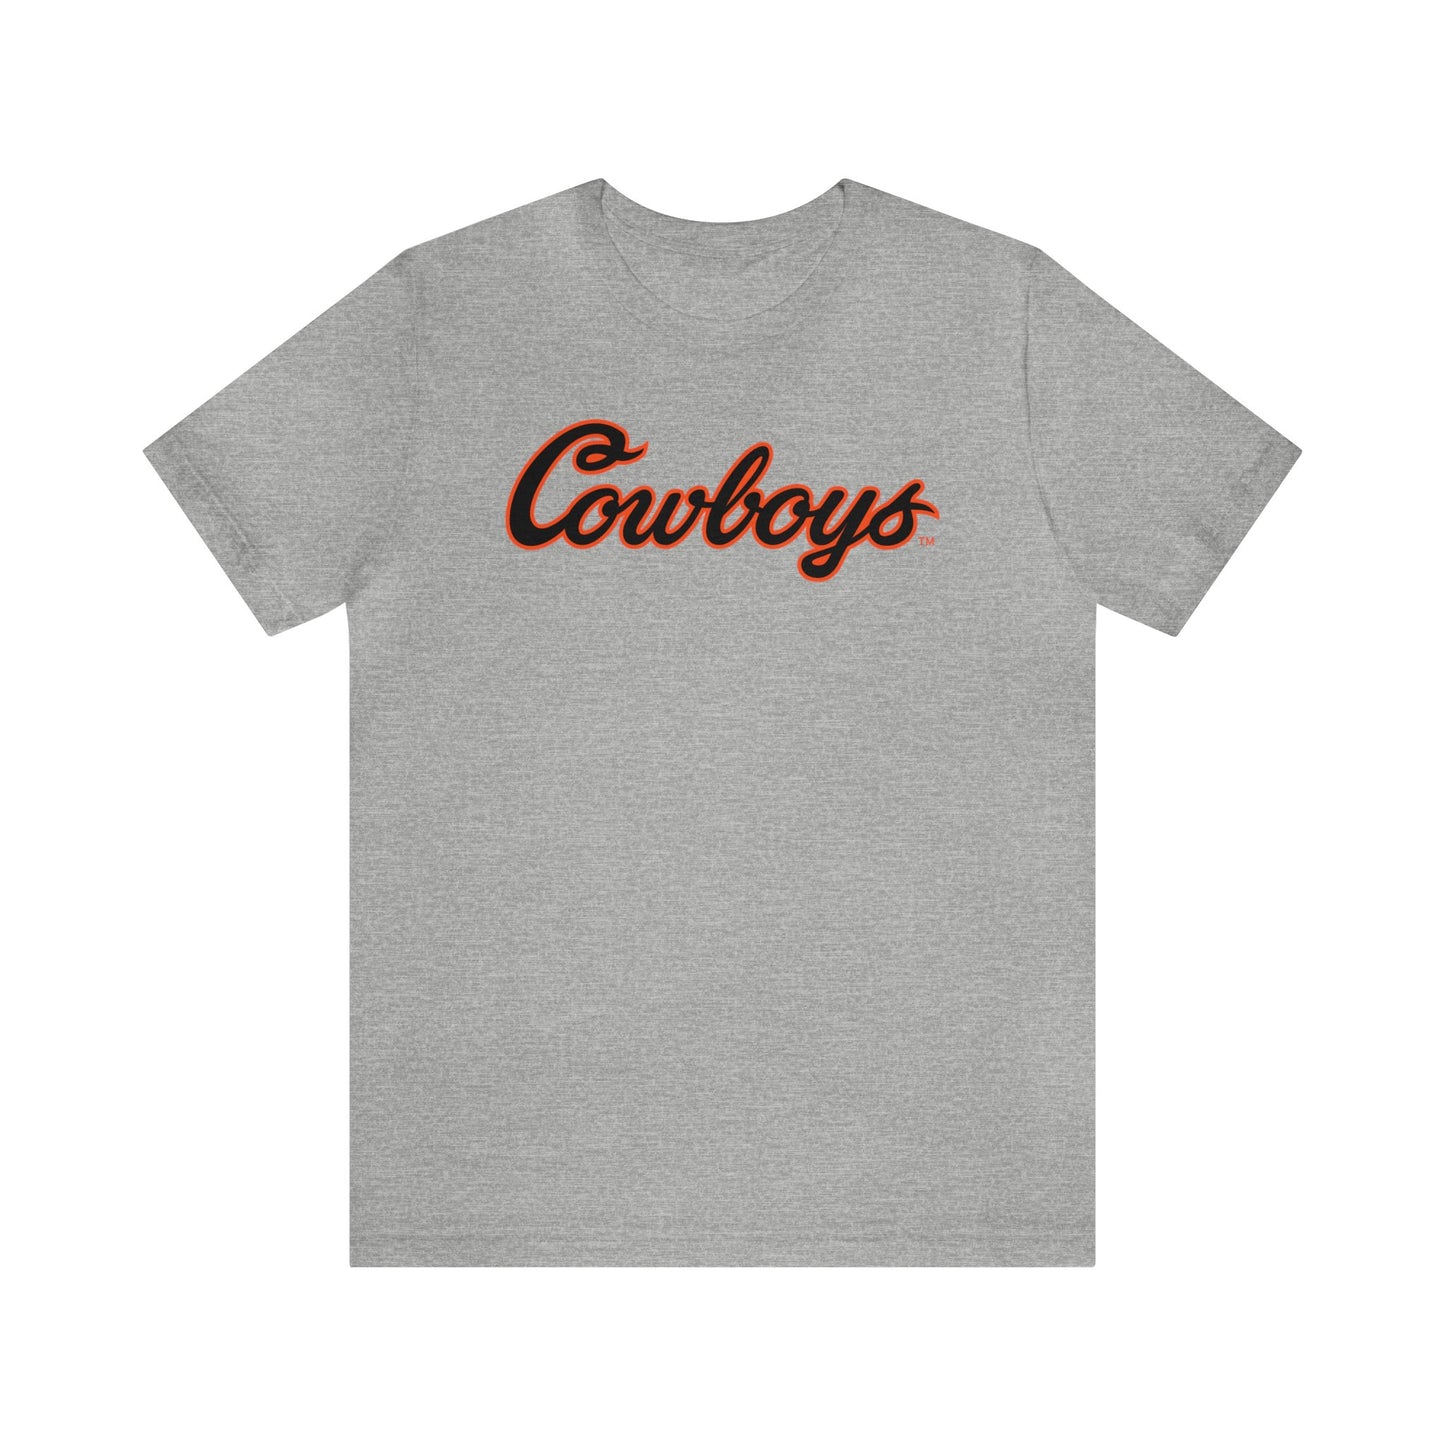 Jakobe Sanders #75 Cursive Cowboys T-Shirt